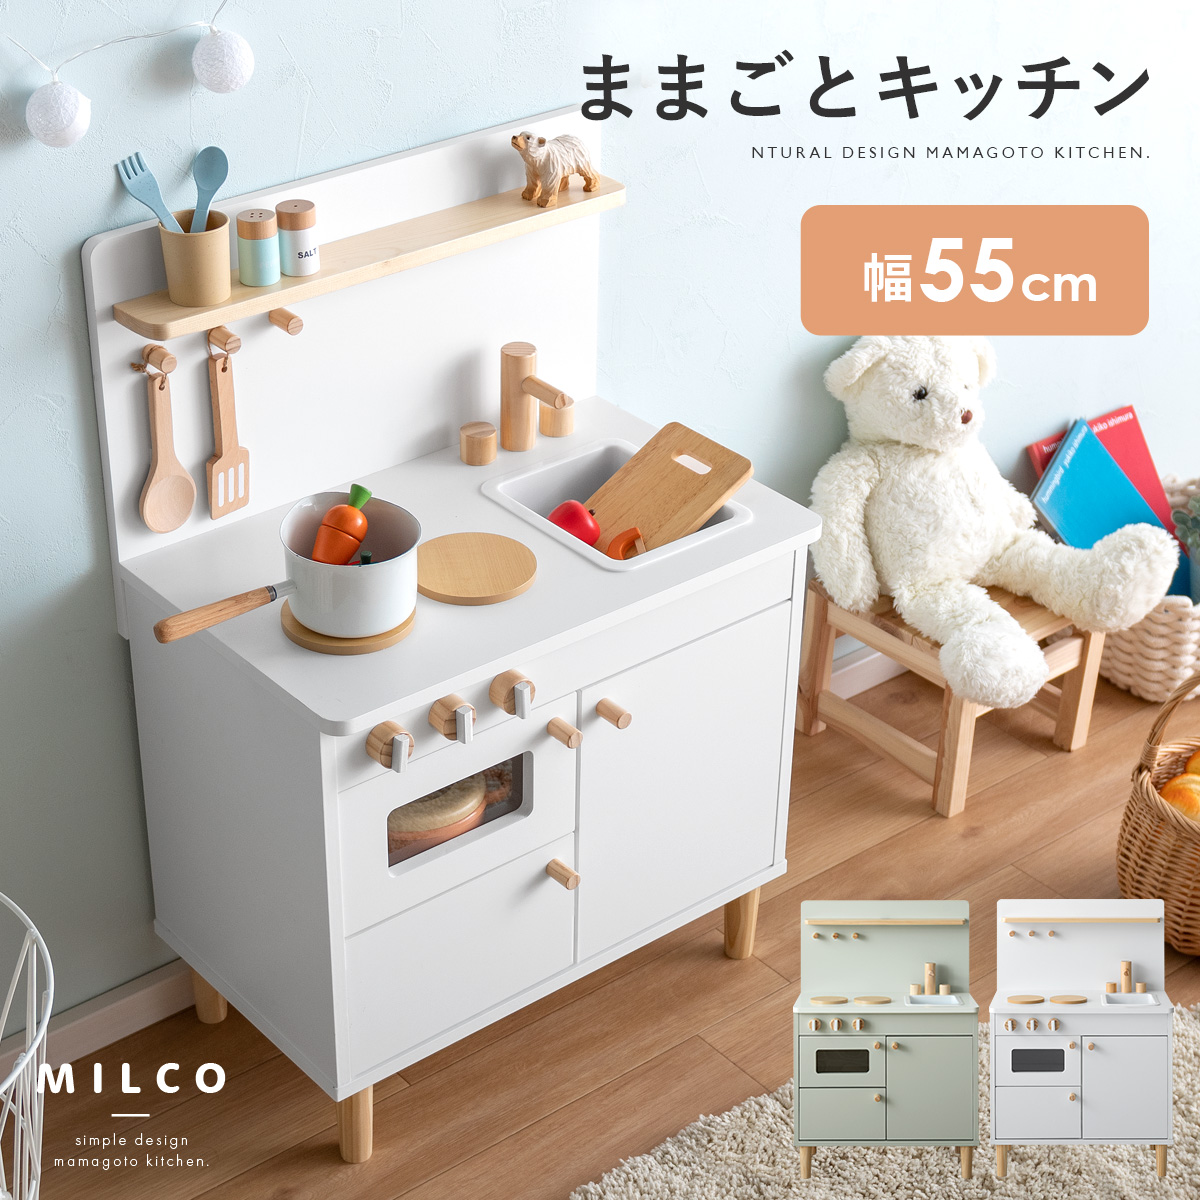 [bc babycare] おままごとキッチン 木製 付属品付き おもちゃ収納